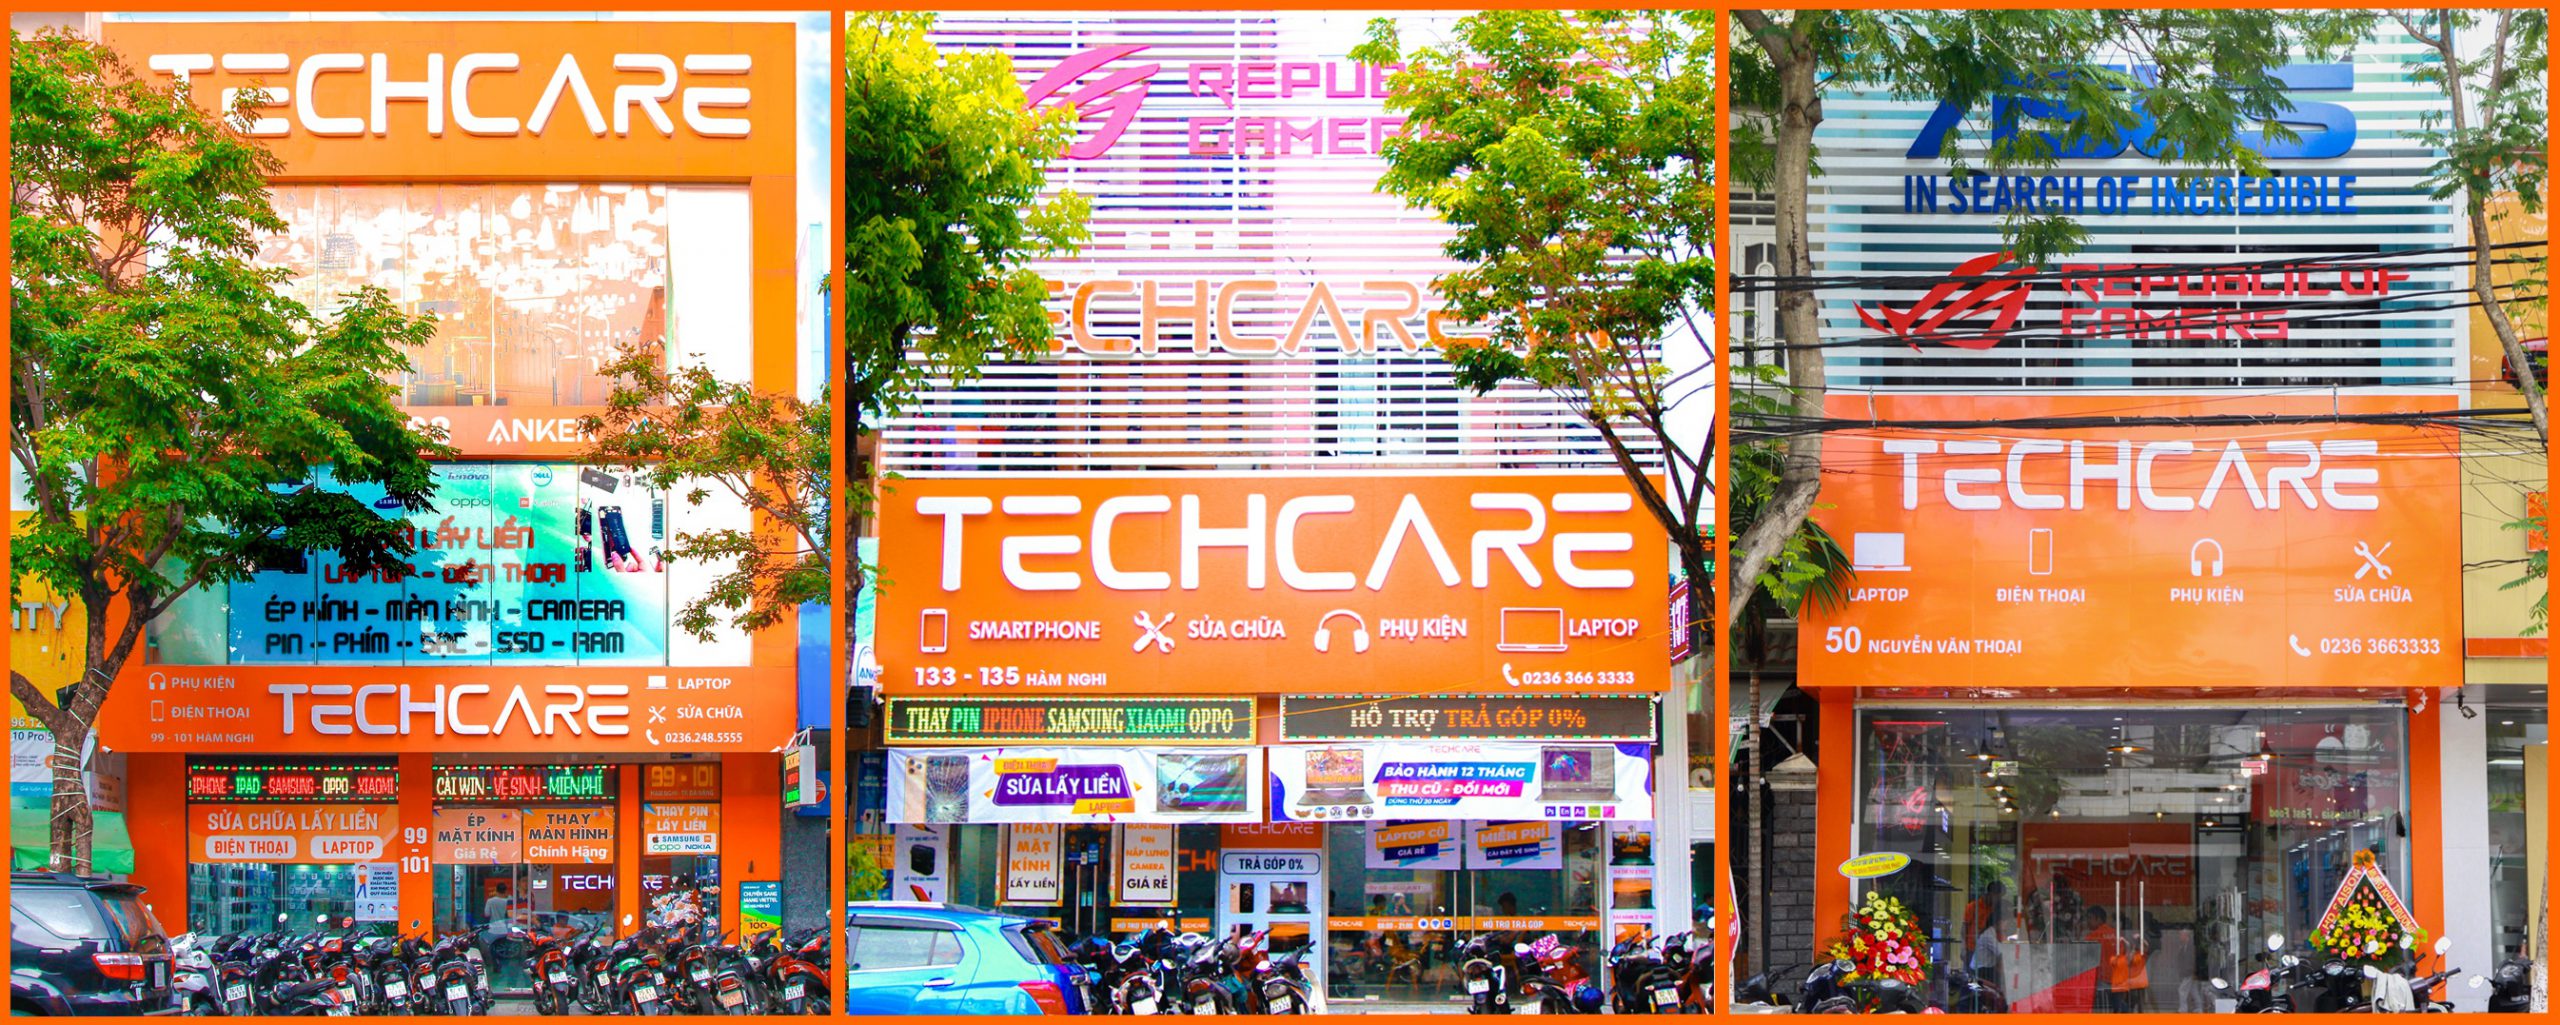 Techcare-he-thong-cong-nghe-so-1-da-nang